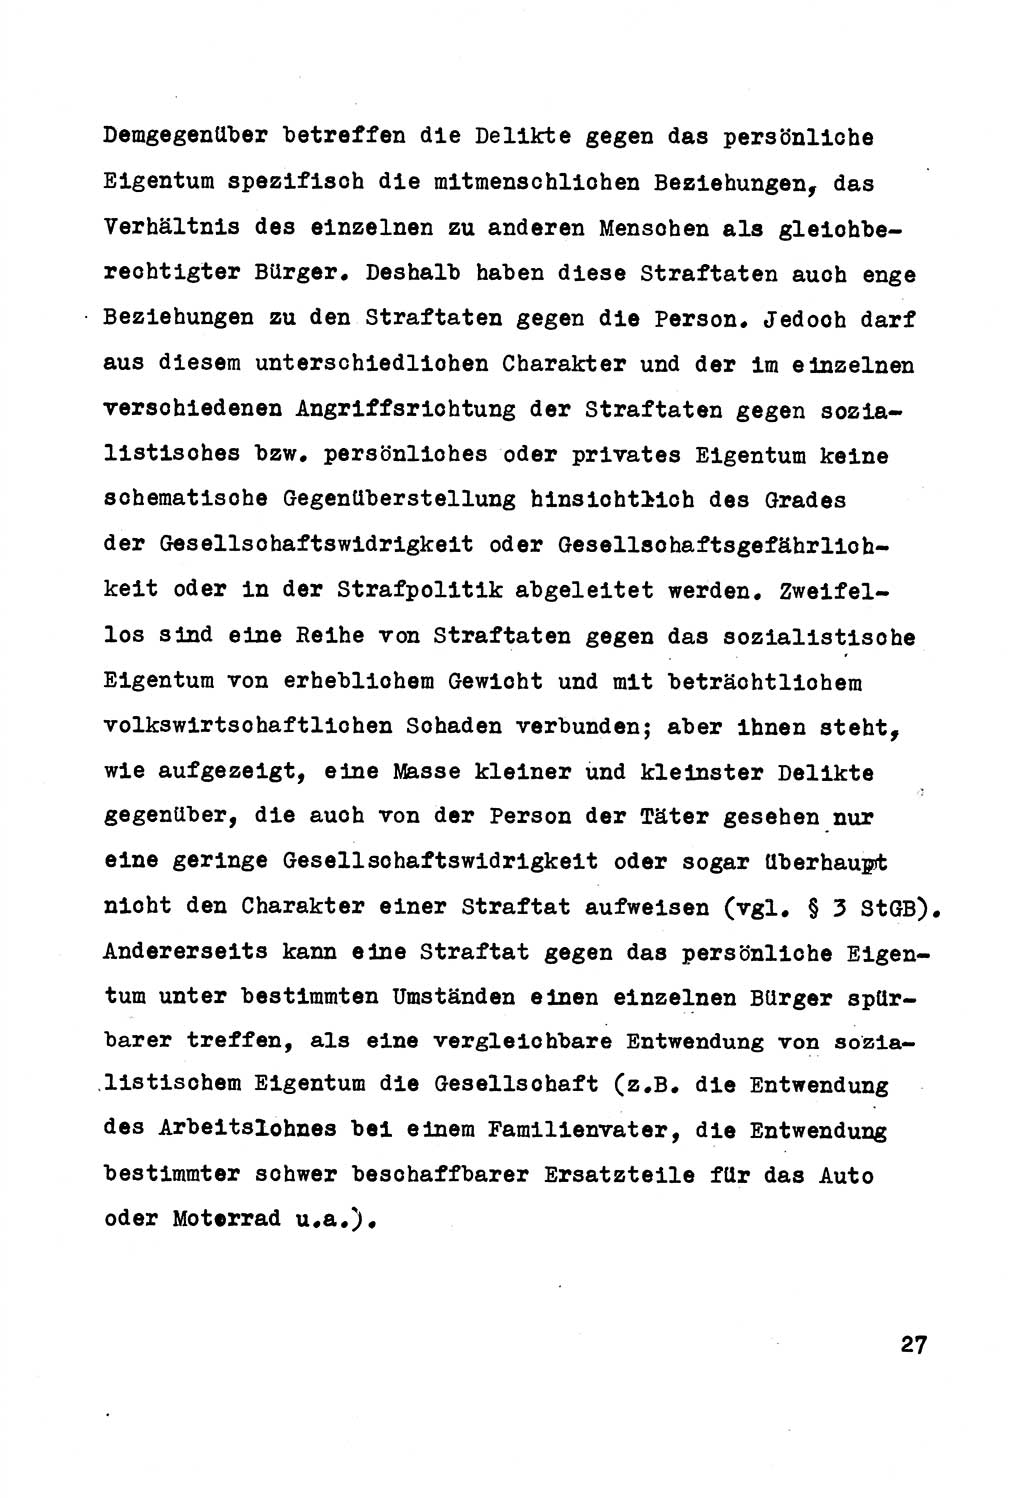 Strafrecht der DDR (Deutsche Demokratische Republik), Besonderer Teil, Lehrmaterial, Heft 5 1970, Seite 27 (Strafr. DDR BT Lehrmat. H. 5 1970, S. 27)